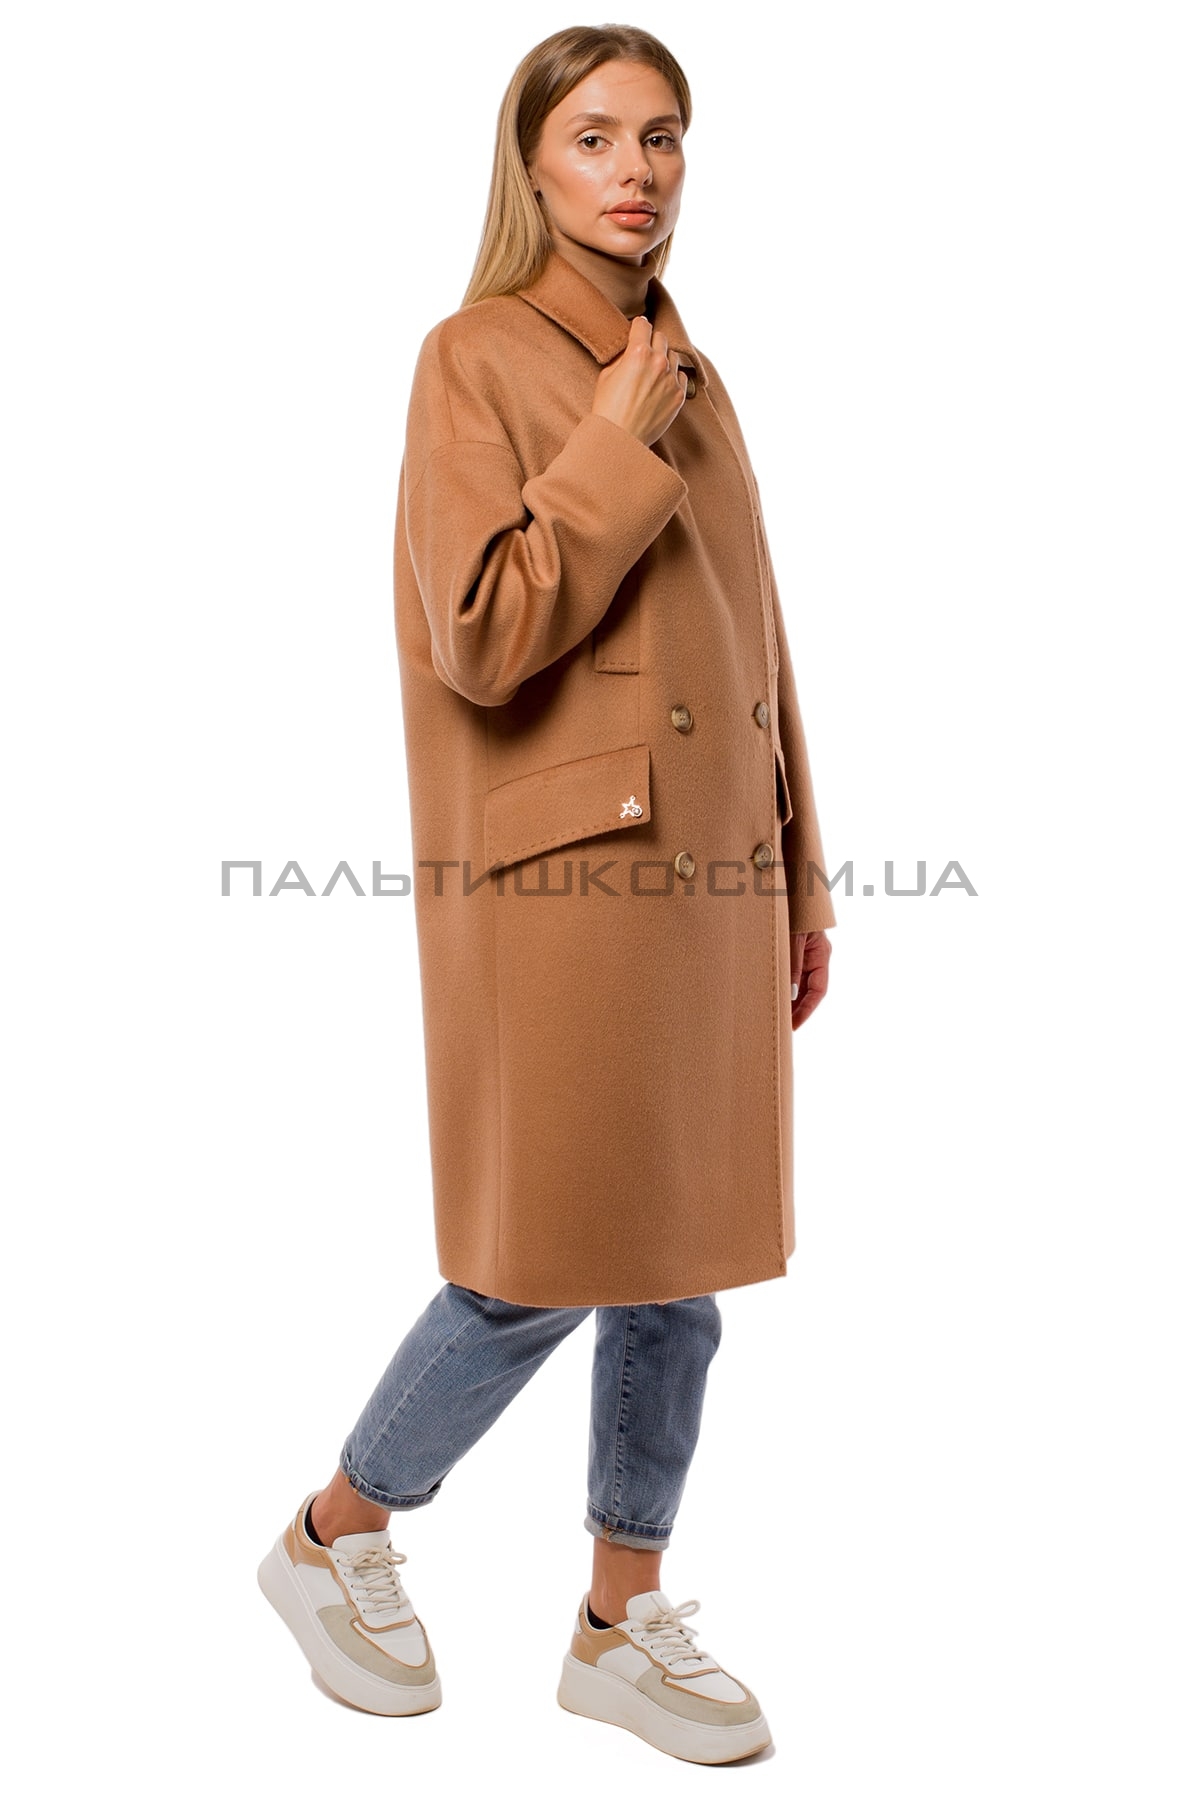  Жіноче пальто з кишенями коричневе